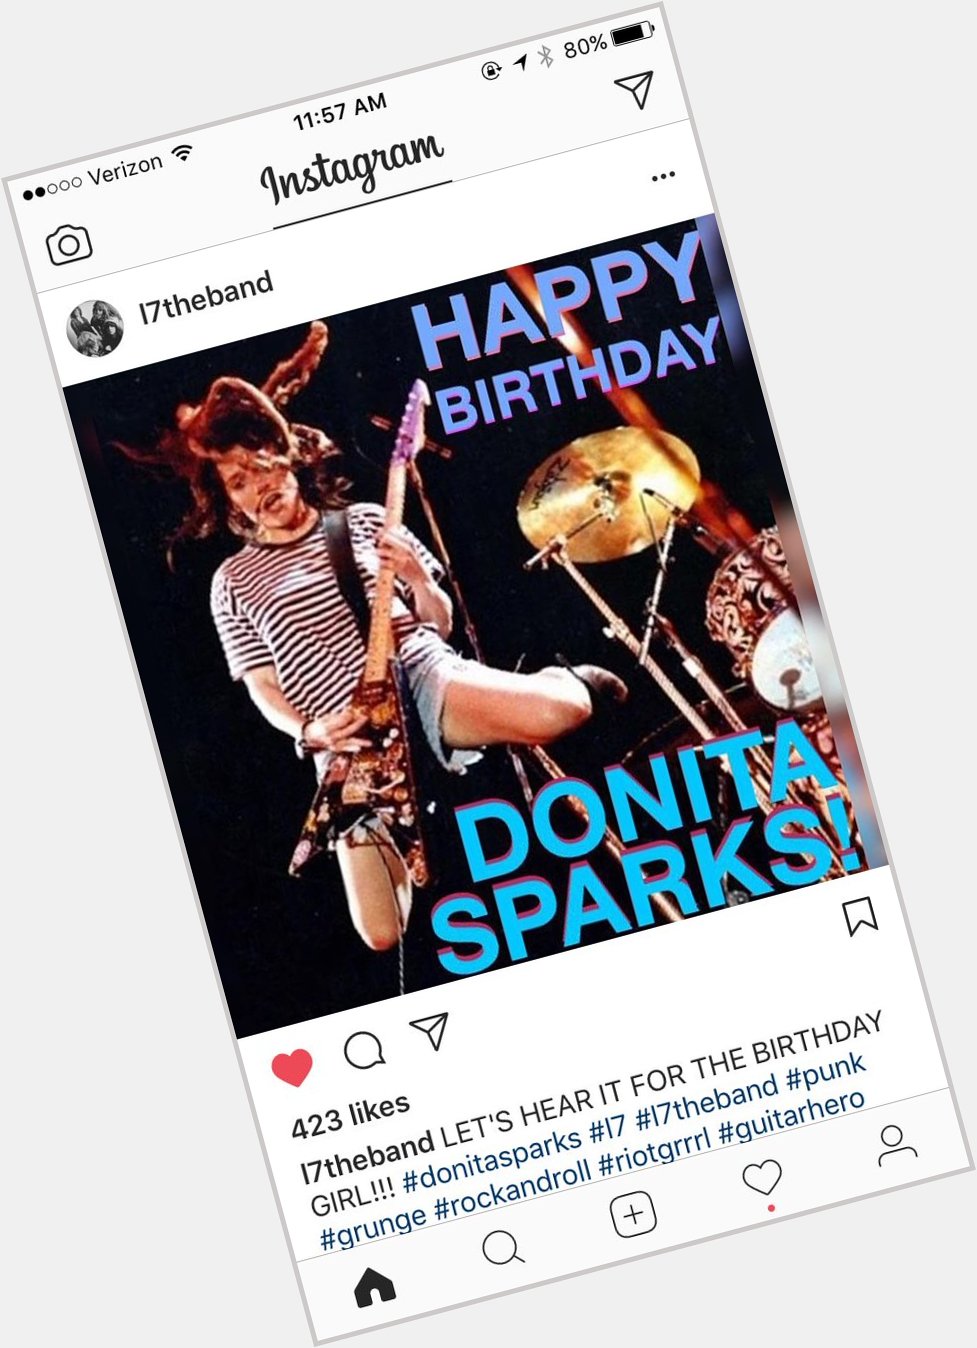 Happy birthday, Donita Sparks of 